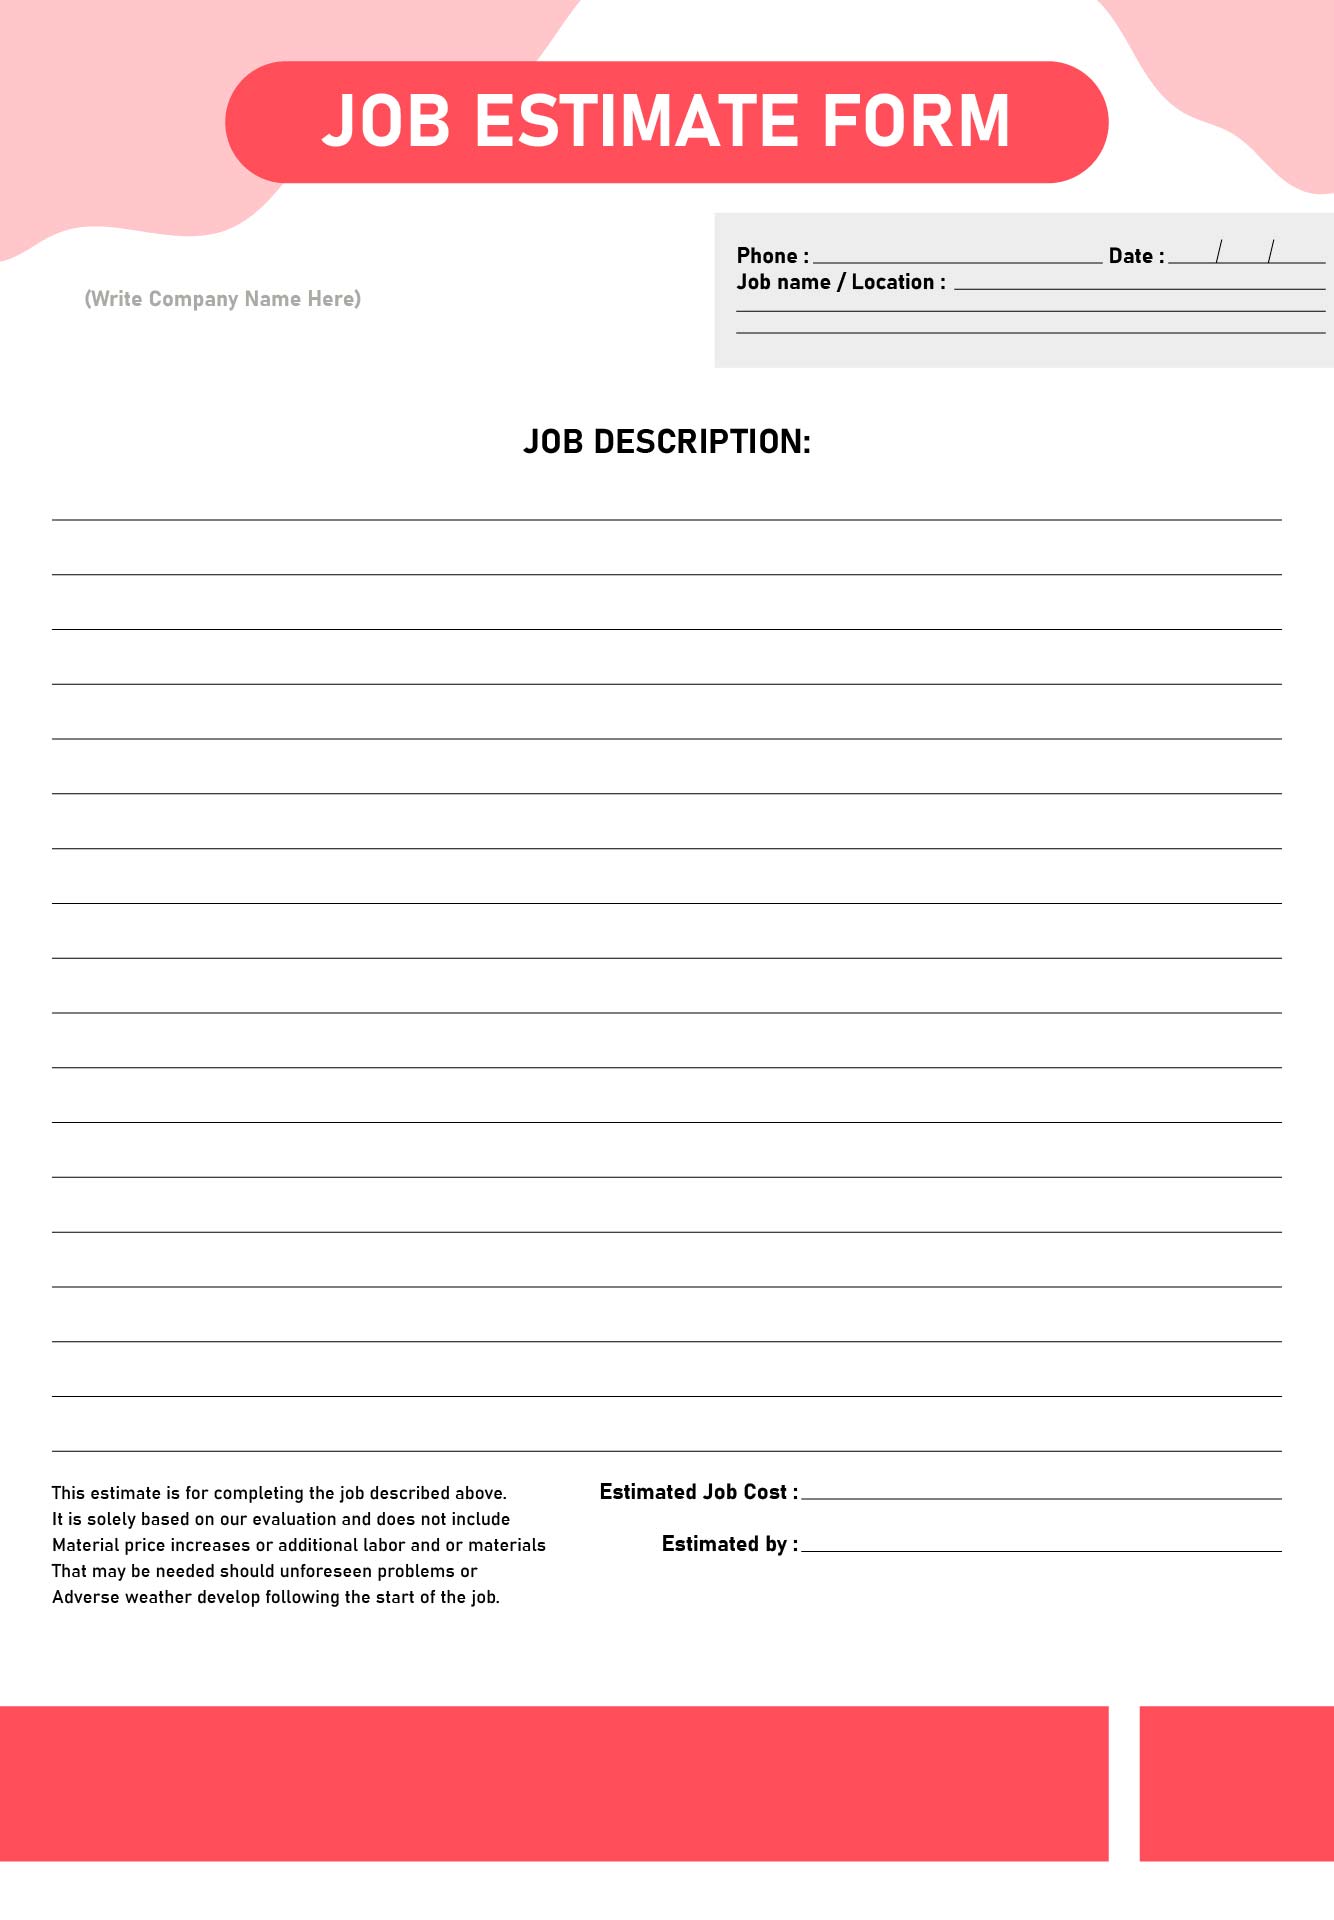 Job Estimate Form Templates